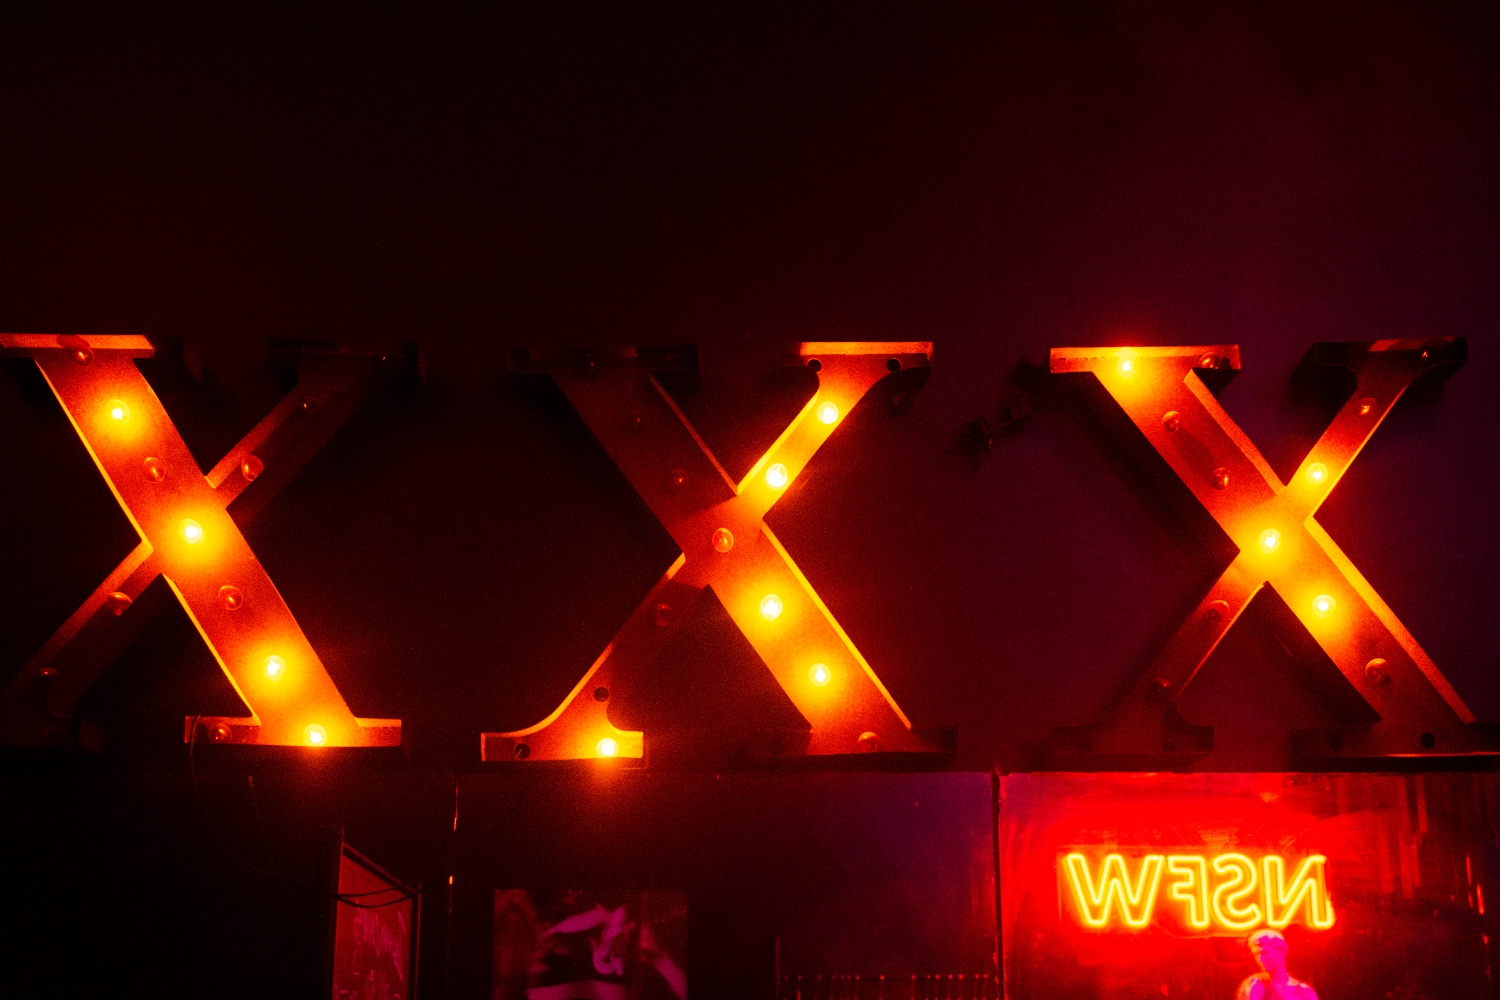 A sign spells "XXX" in lightbulbs